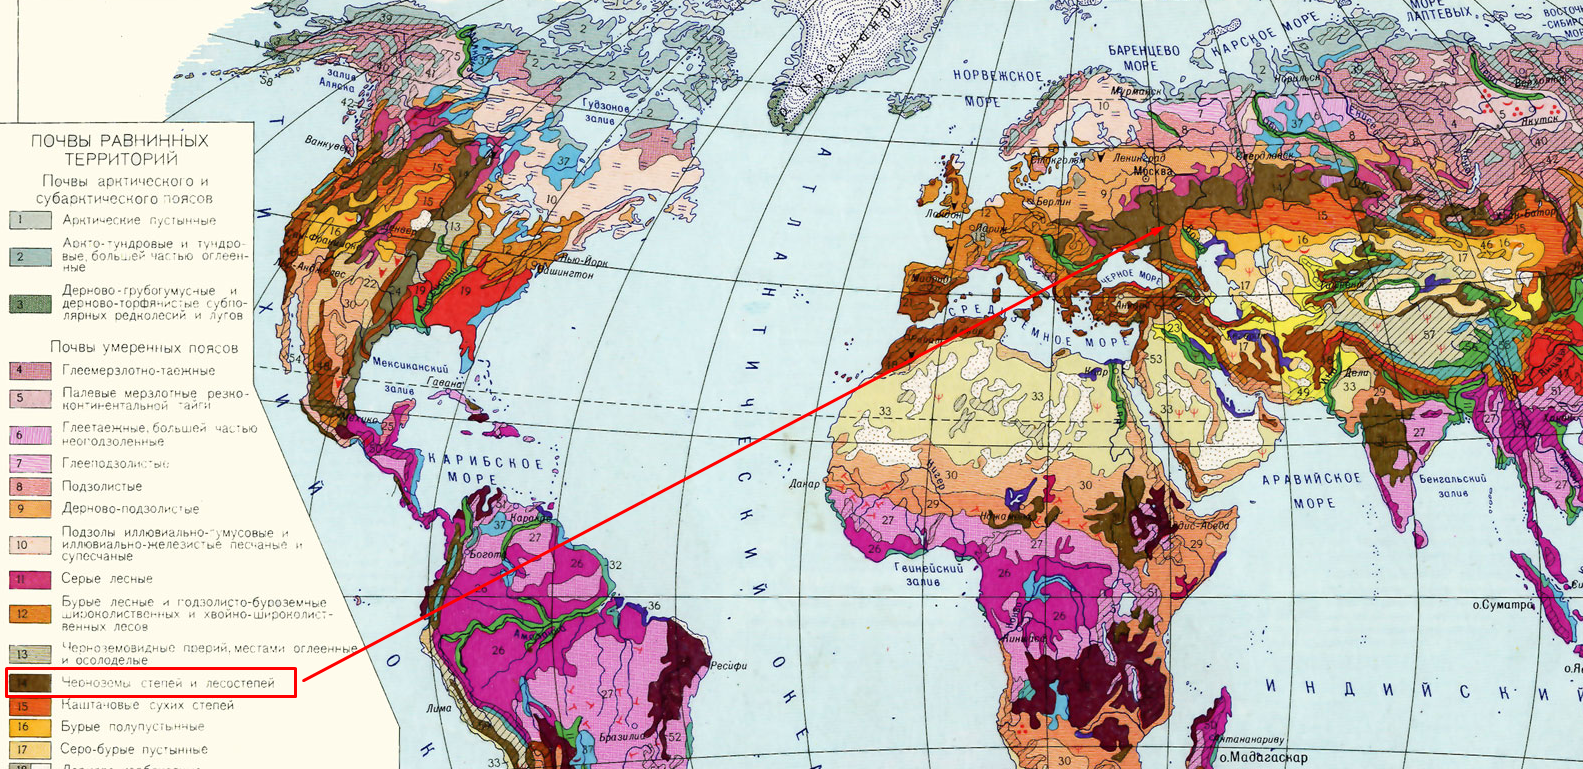 Какая природная зона самая плодородная почва чернозем. Карта плодородности почв Европы. Карта типов почв в мире. Карта черноземов Европы.